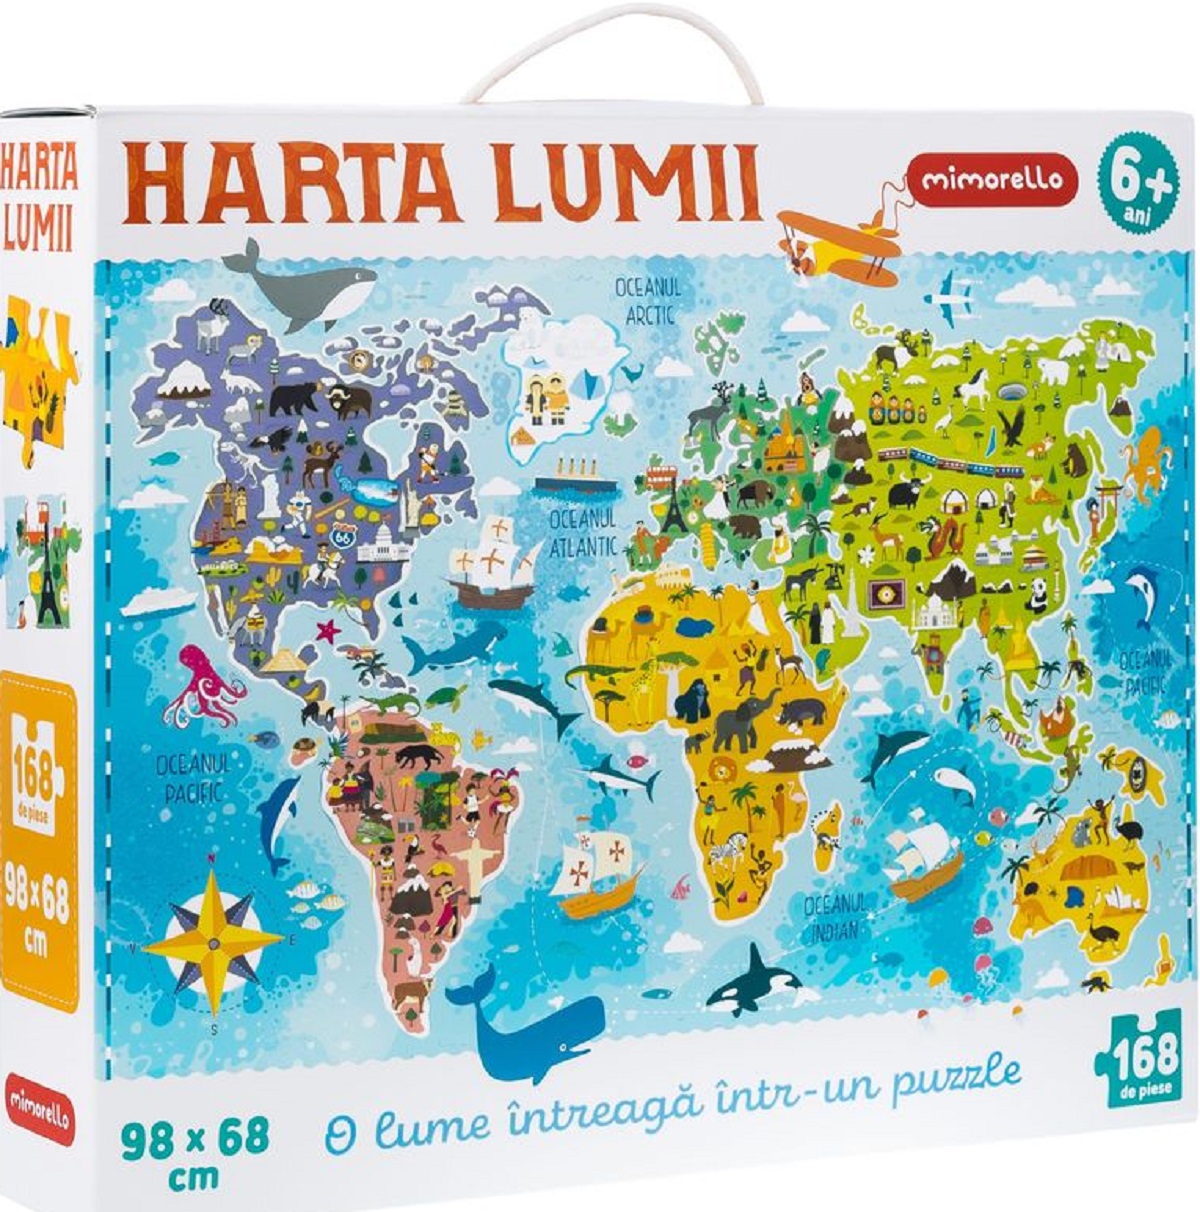 Puzzle: Harta lumii